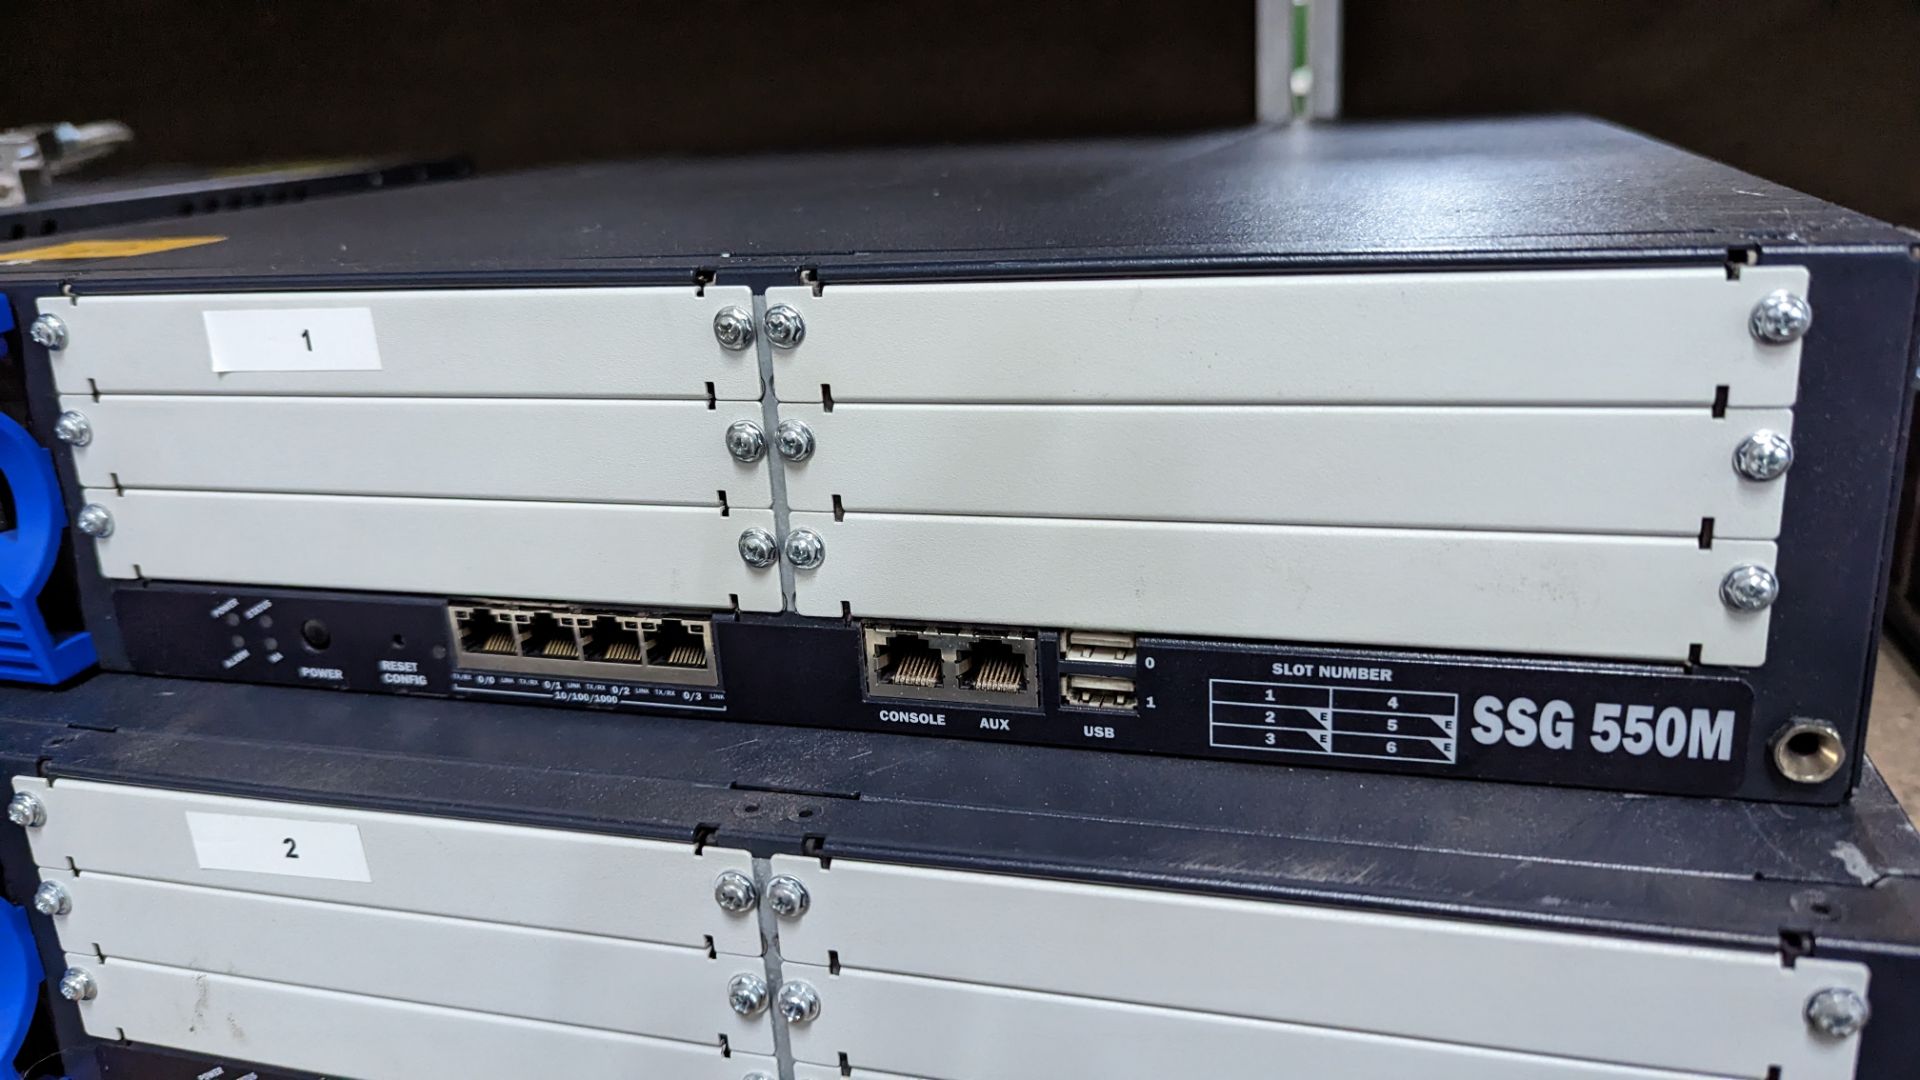 2 off Juniper Networks model SSG 550M secure service gateways - Image 4 of 5